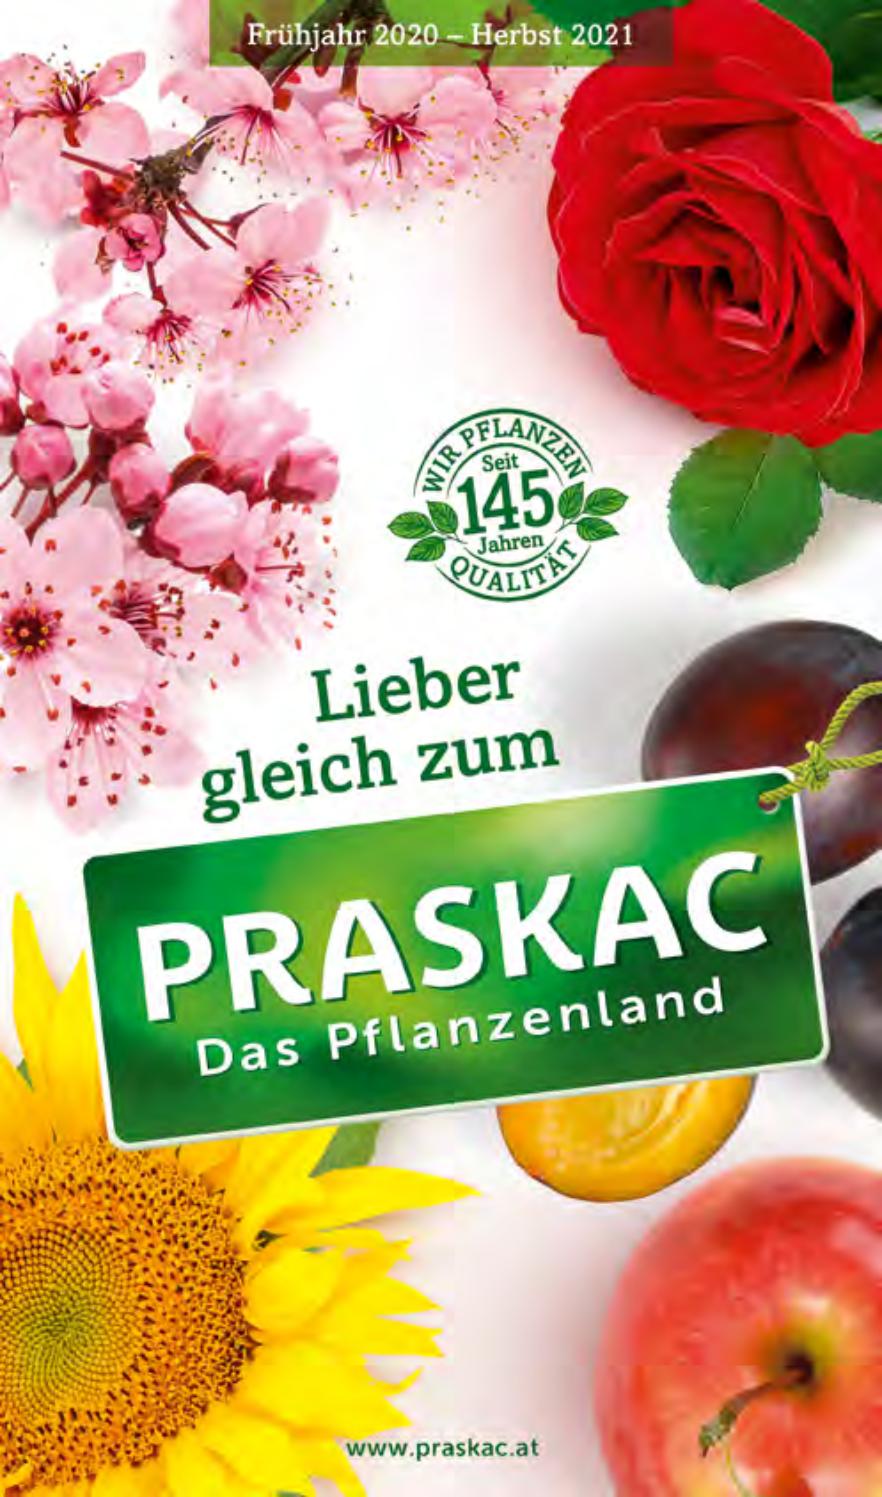 Hangsicherung Garten Schön Praskac Pflanzen Katalog 2020 by Praskac Pflanzenland issuu